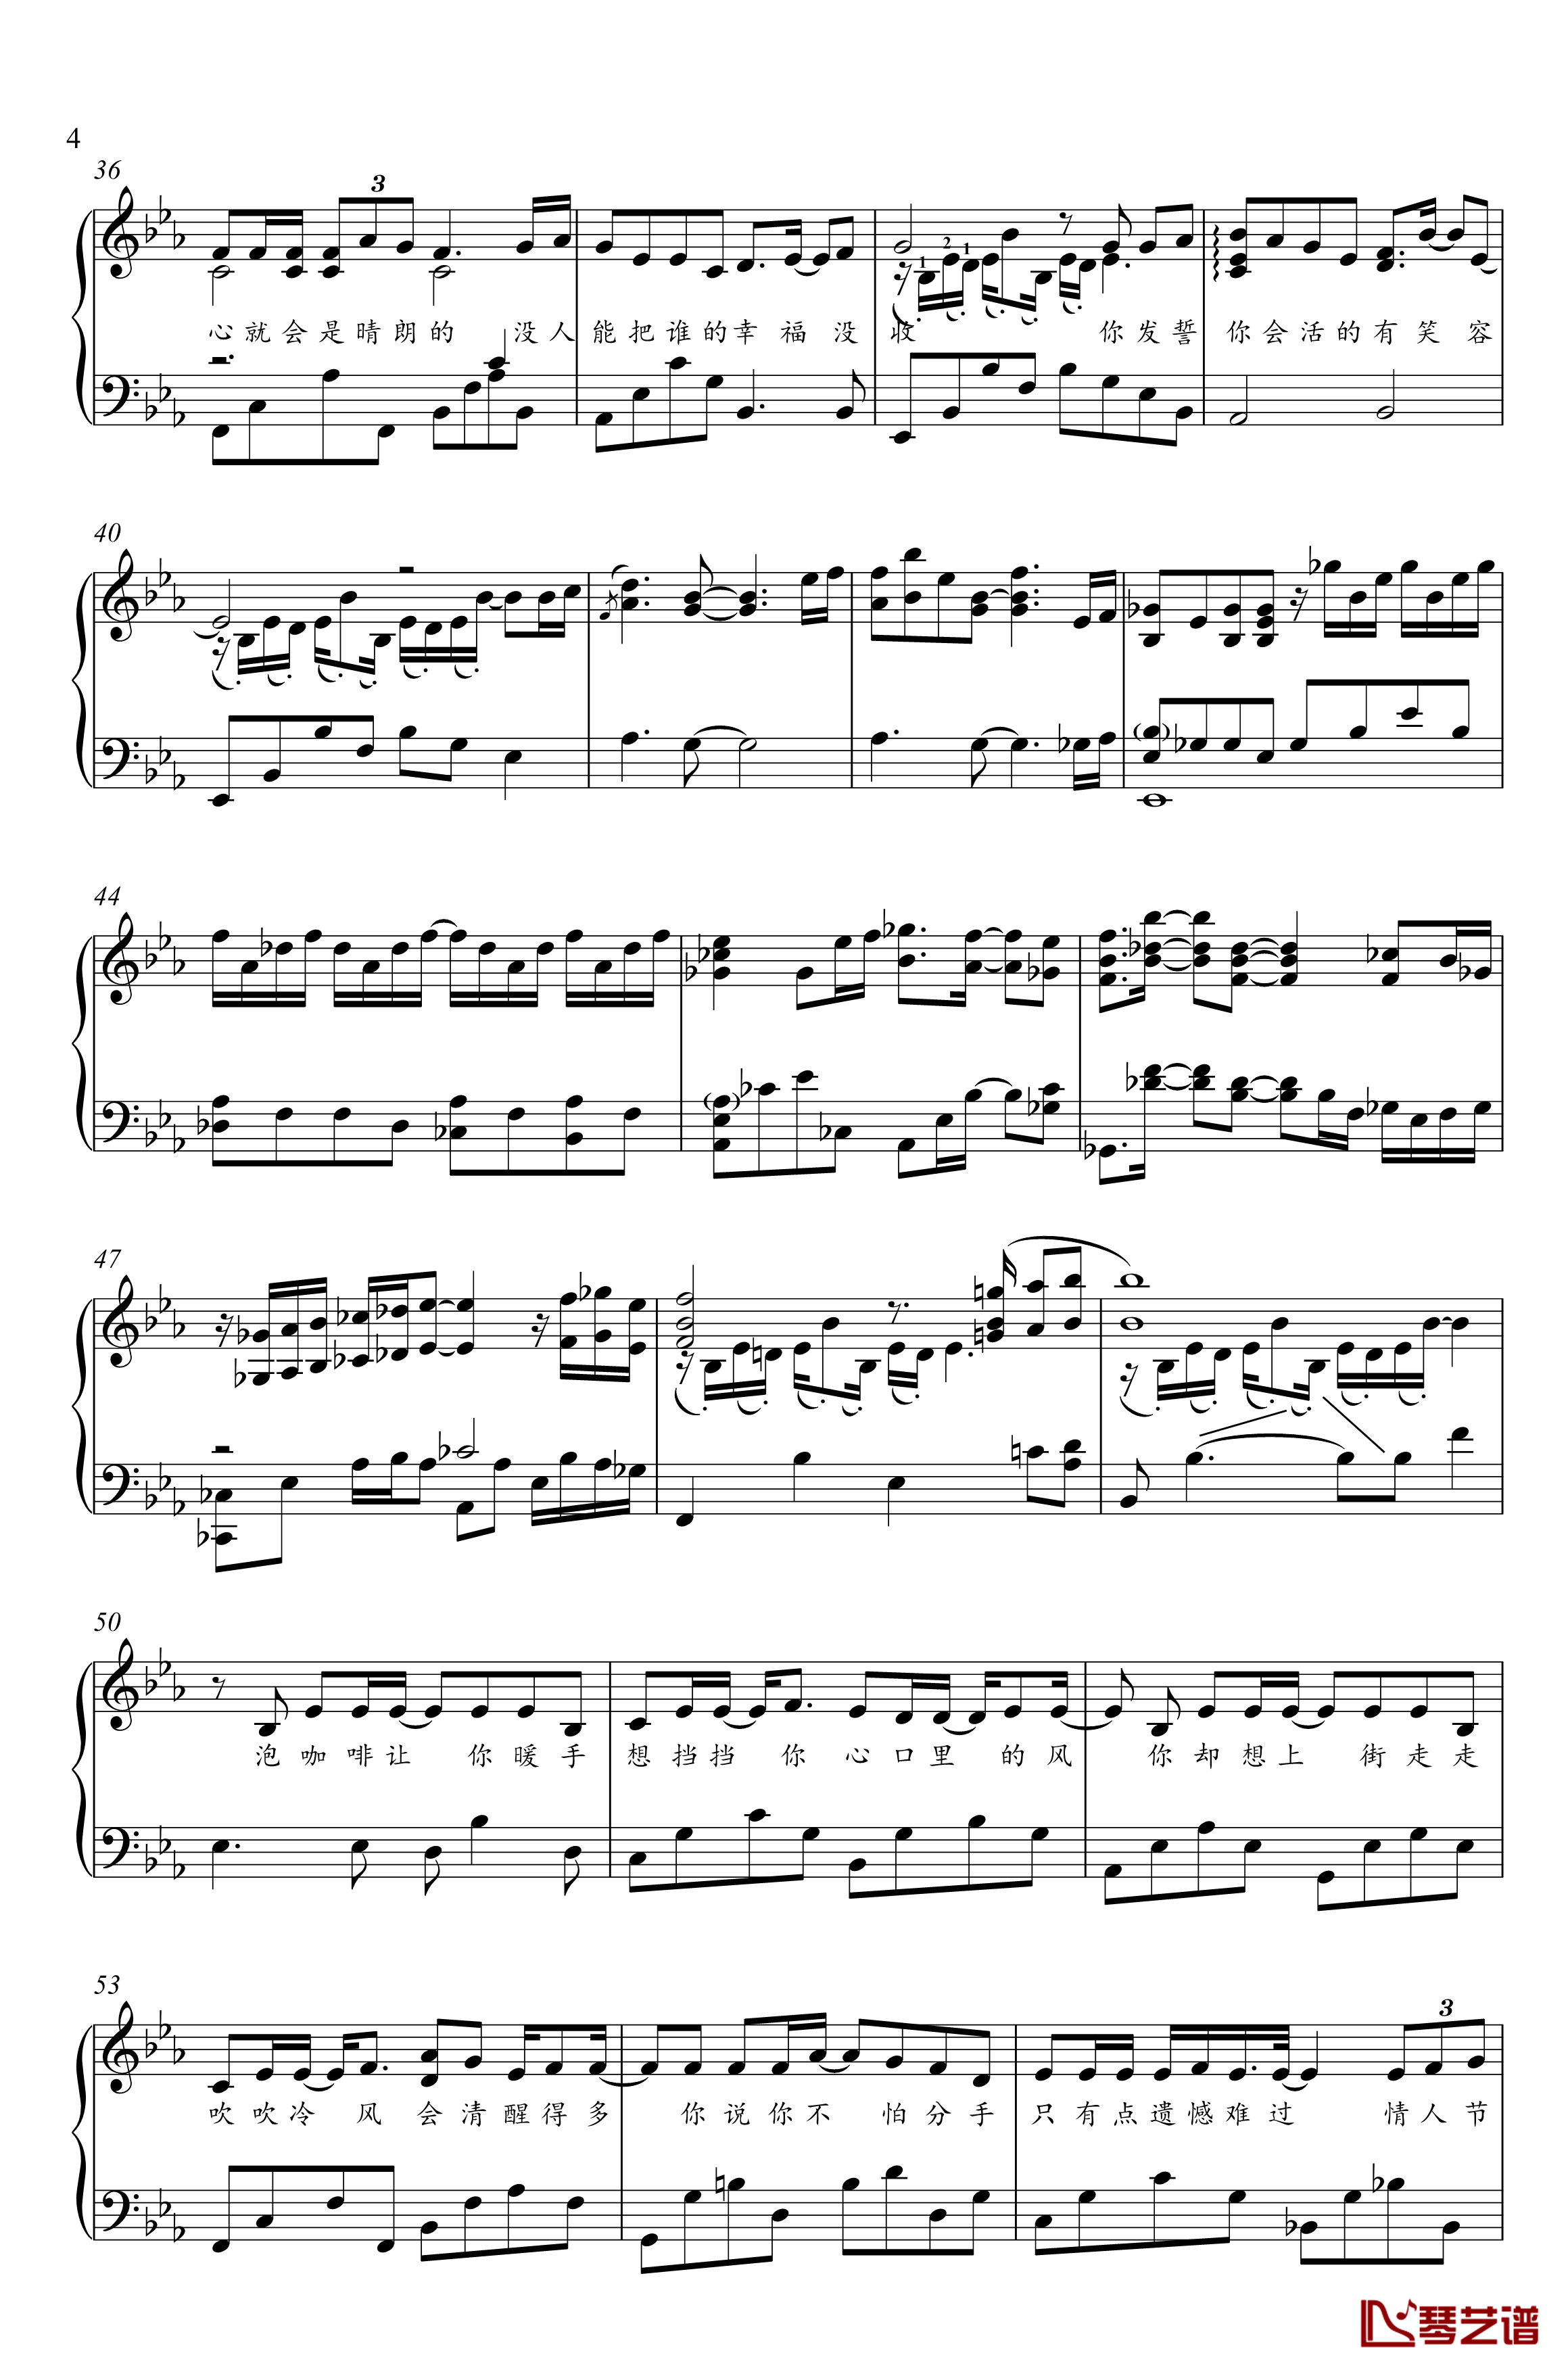 分手快乐钢琴谱-梁静茹-金老师钢琴独奏谱1910314